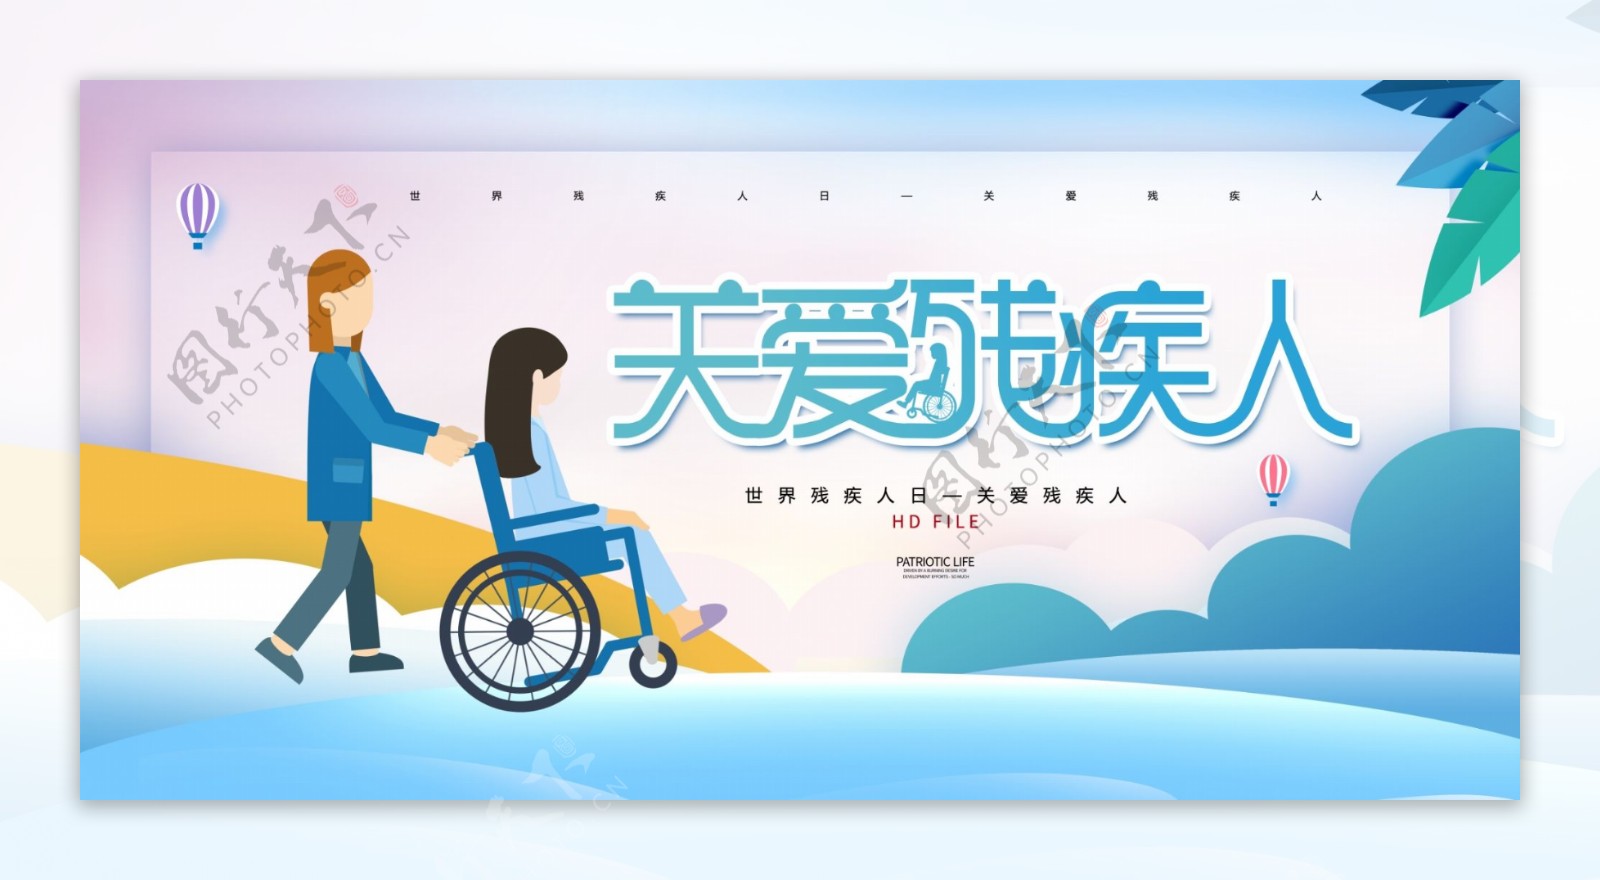 关爱残疾人公益宣传海报